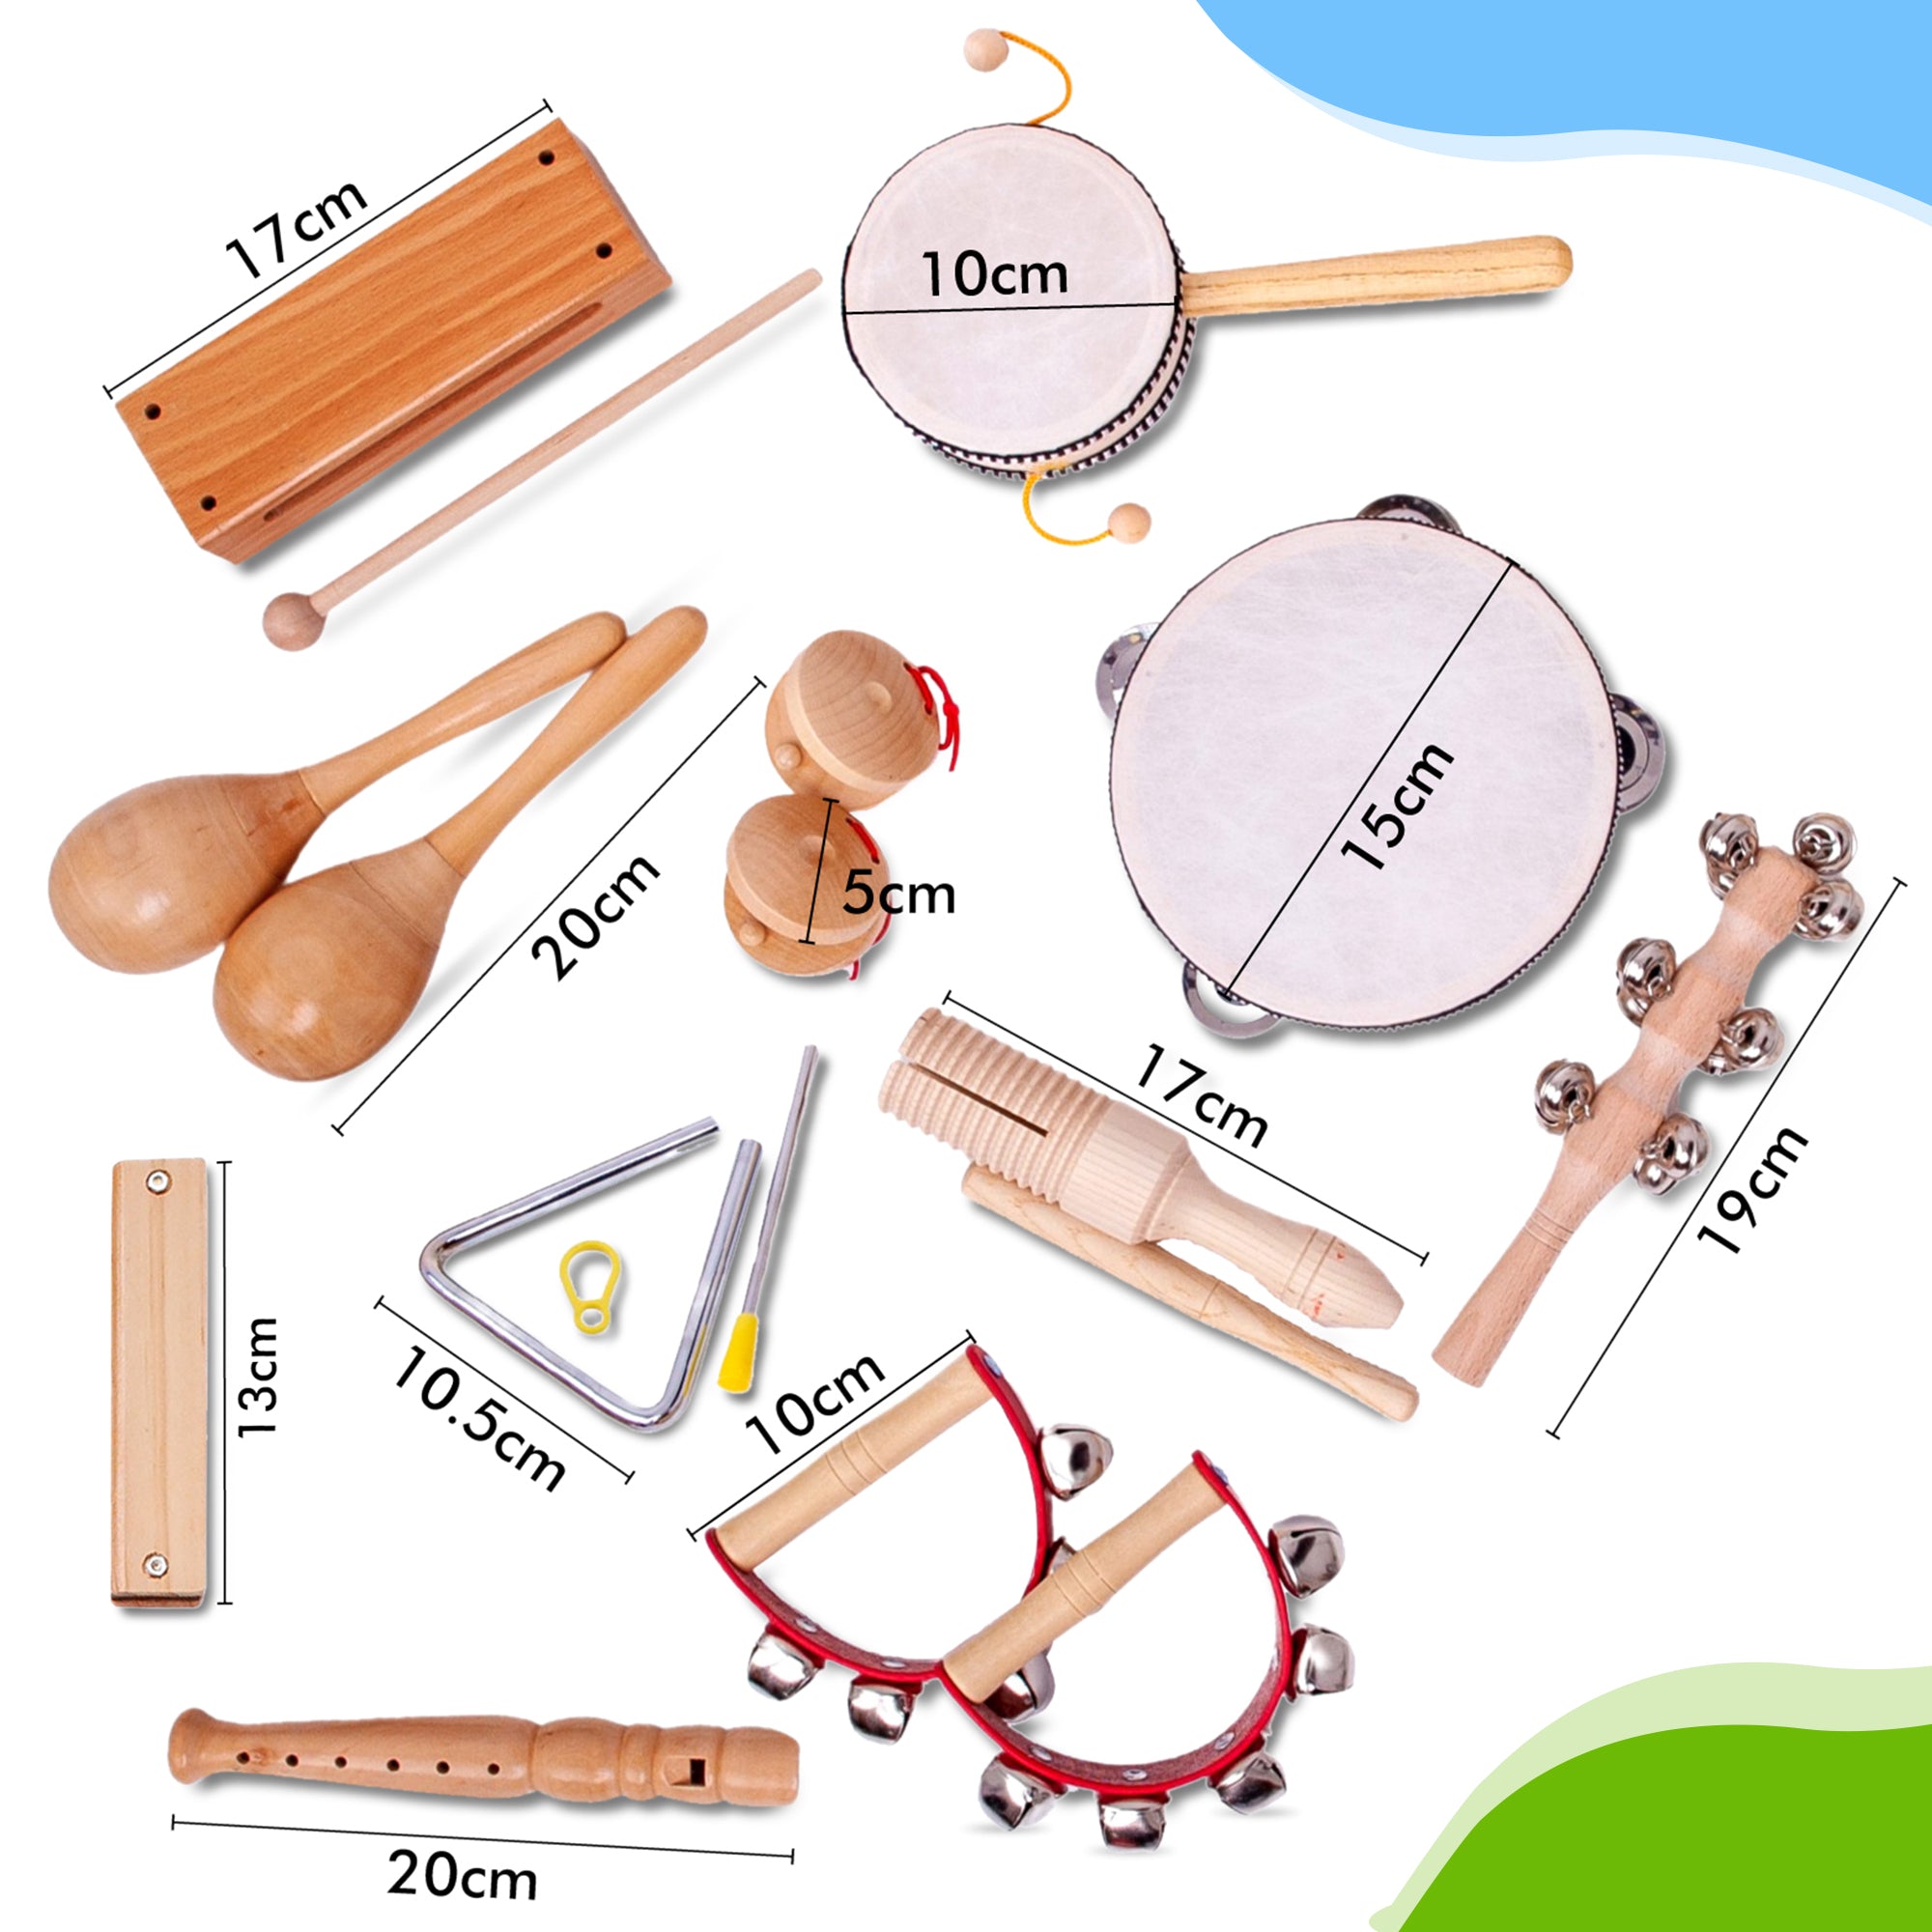 Dit zijn de afmetingen van houten speelgoedinstrumenten, speciaal gemaakt voor kinderen. Bestel ze gelijk en speel morgen op deze houten blokfluit of mondharmonica. Je mag zelf een speelgoedinstrument kiezen